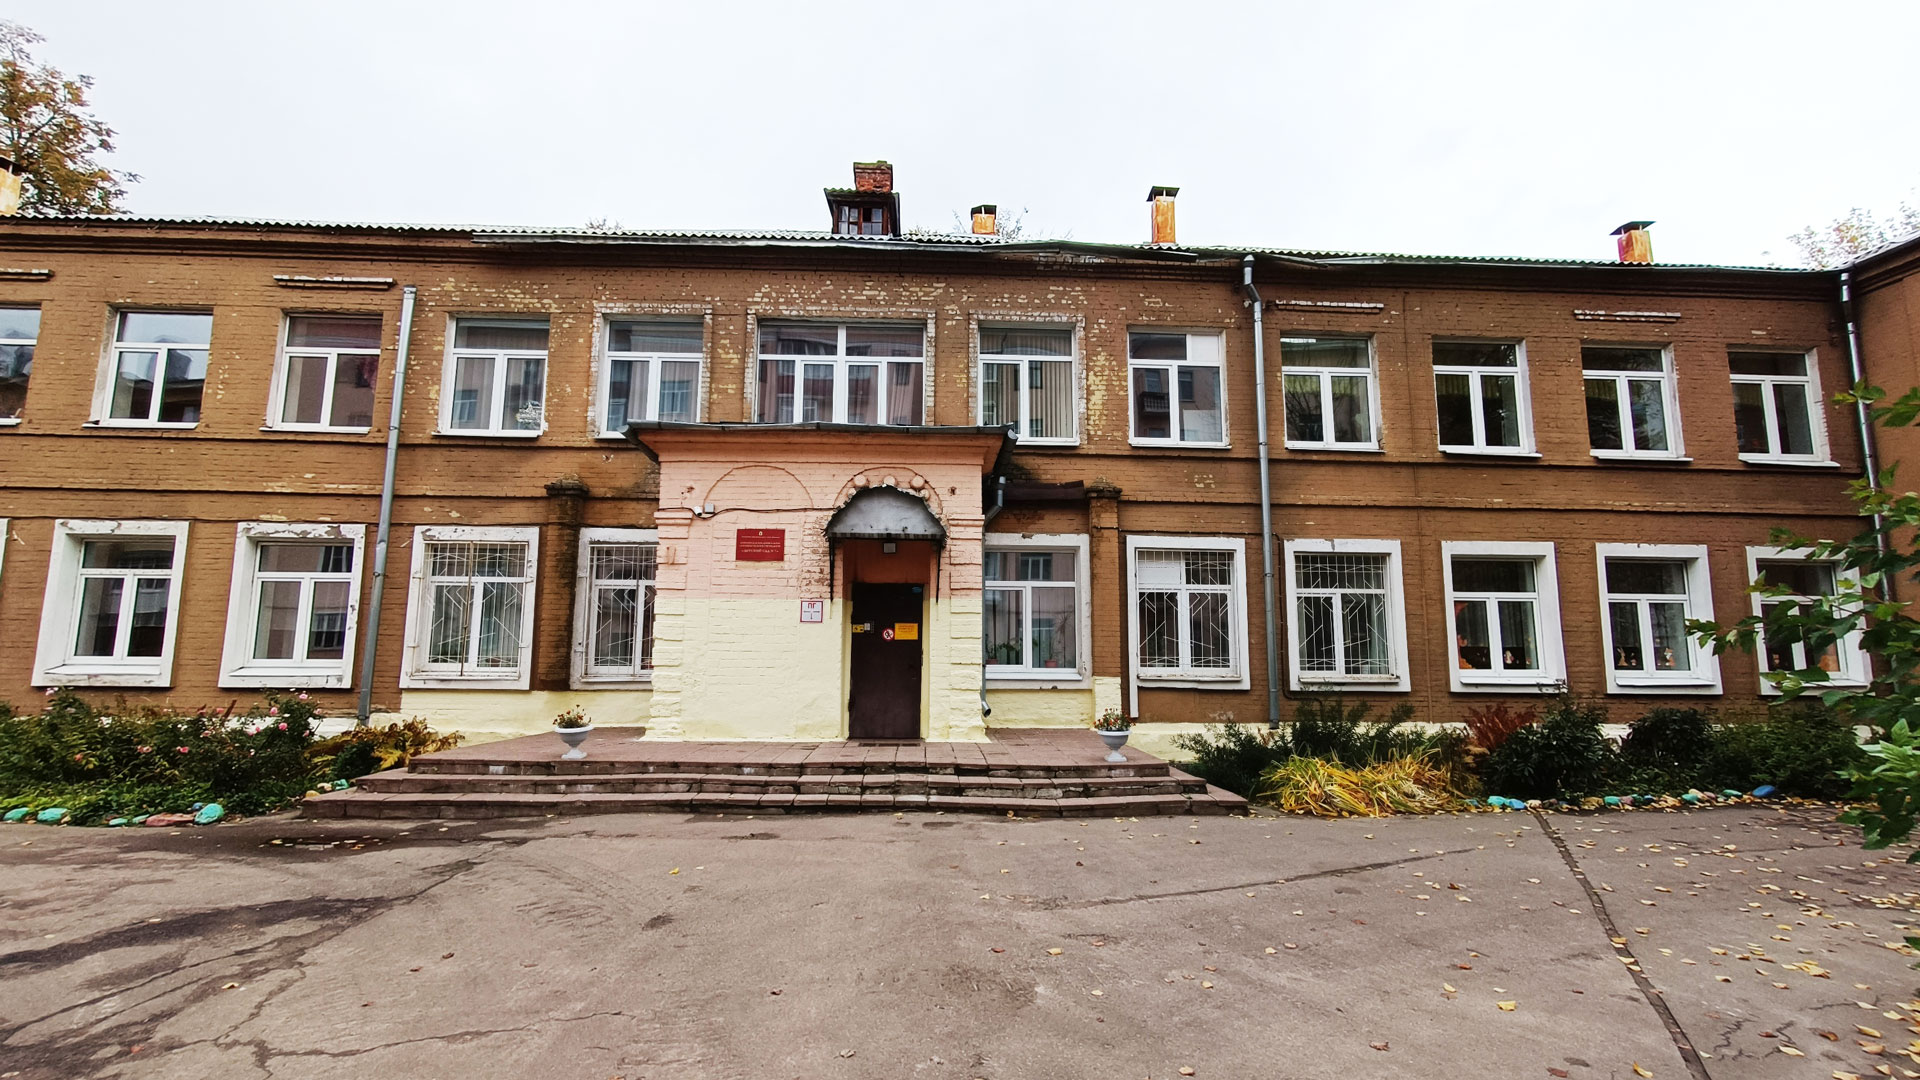 Детский сад 7 Ярославль: общий вид здания.